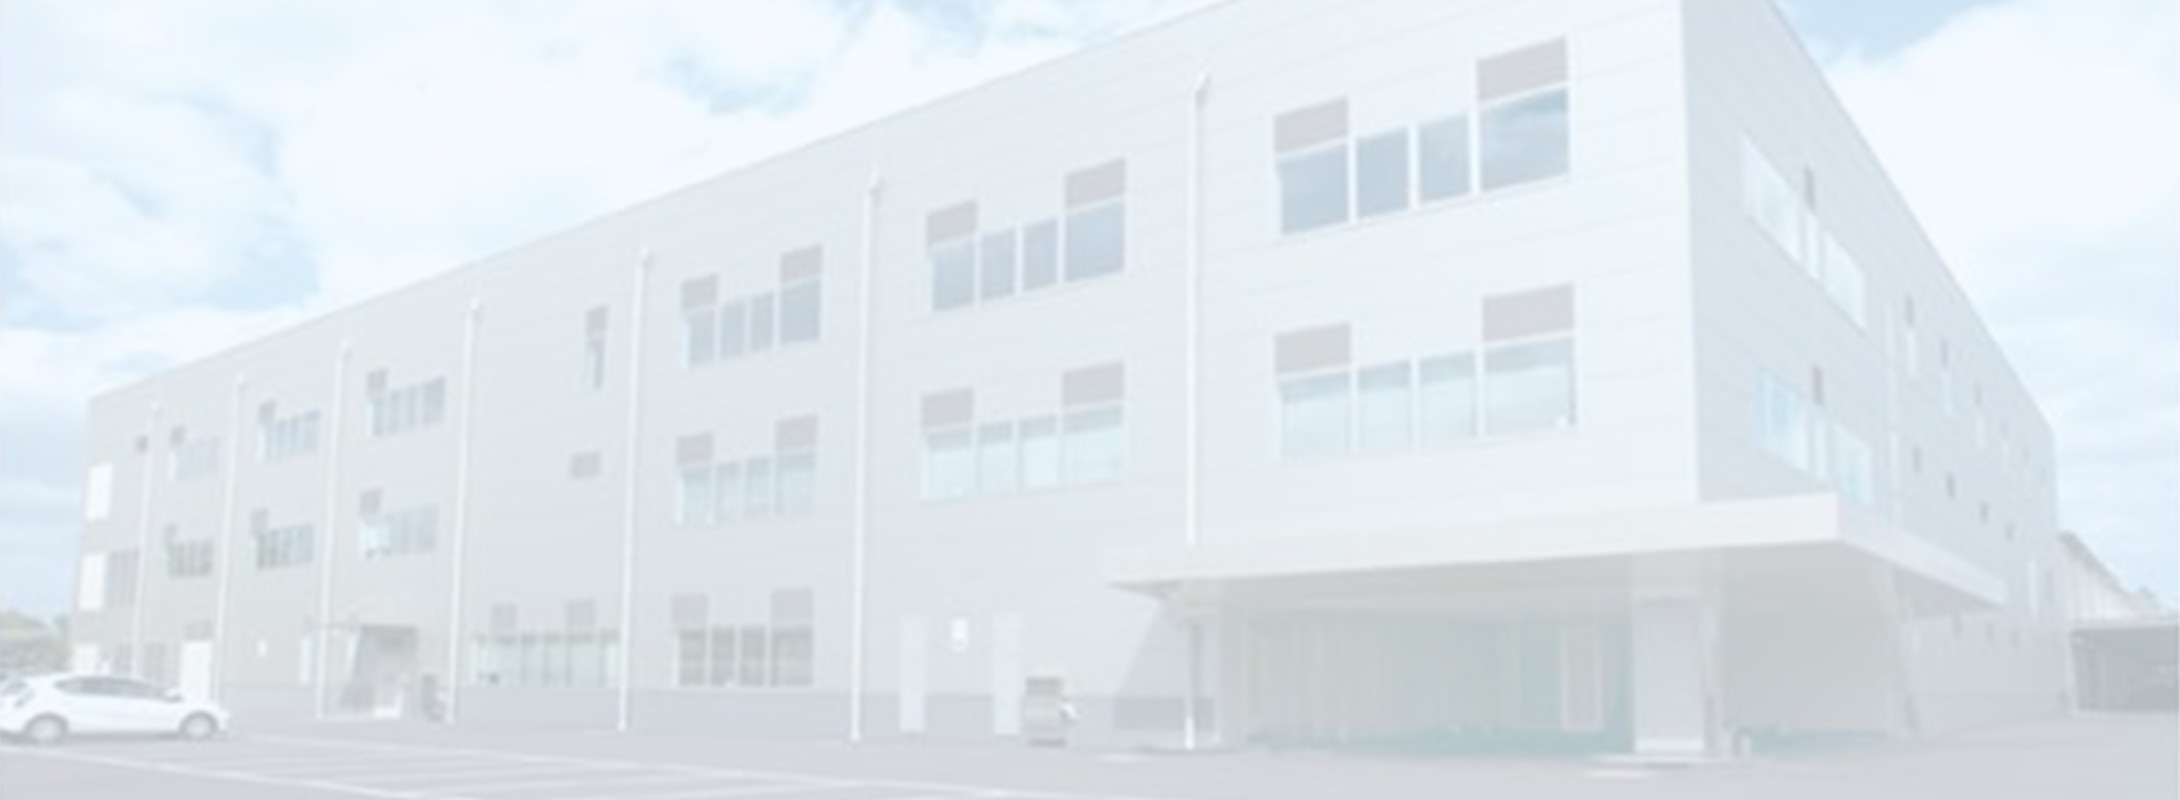 Biwako factory